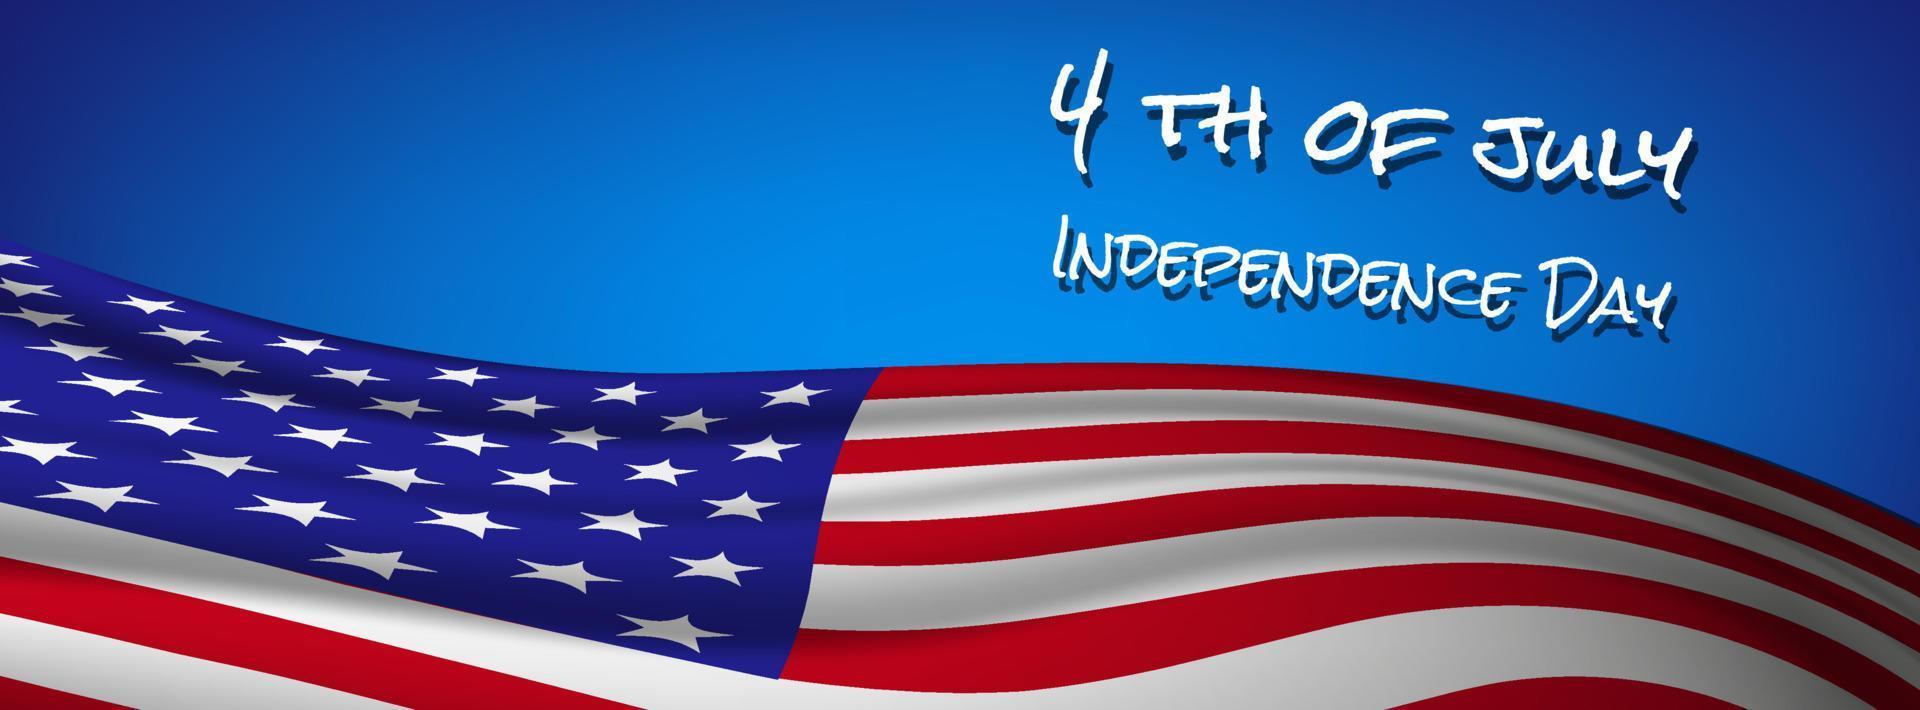 bandeira da bandeira americana 4 de julho independência vetor